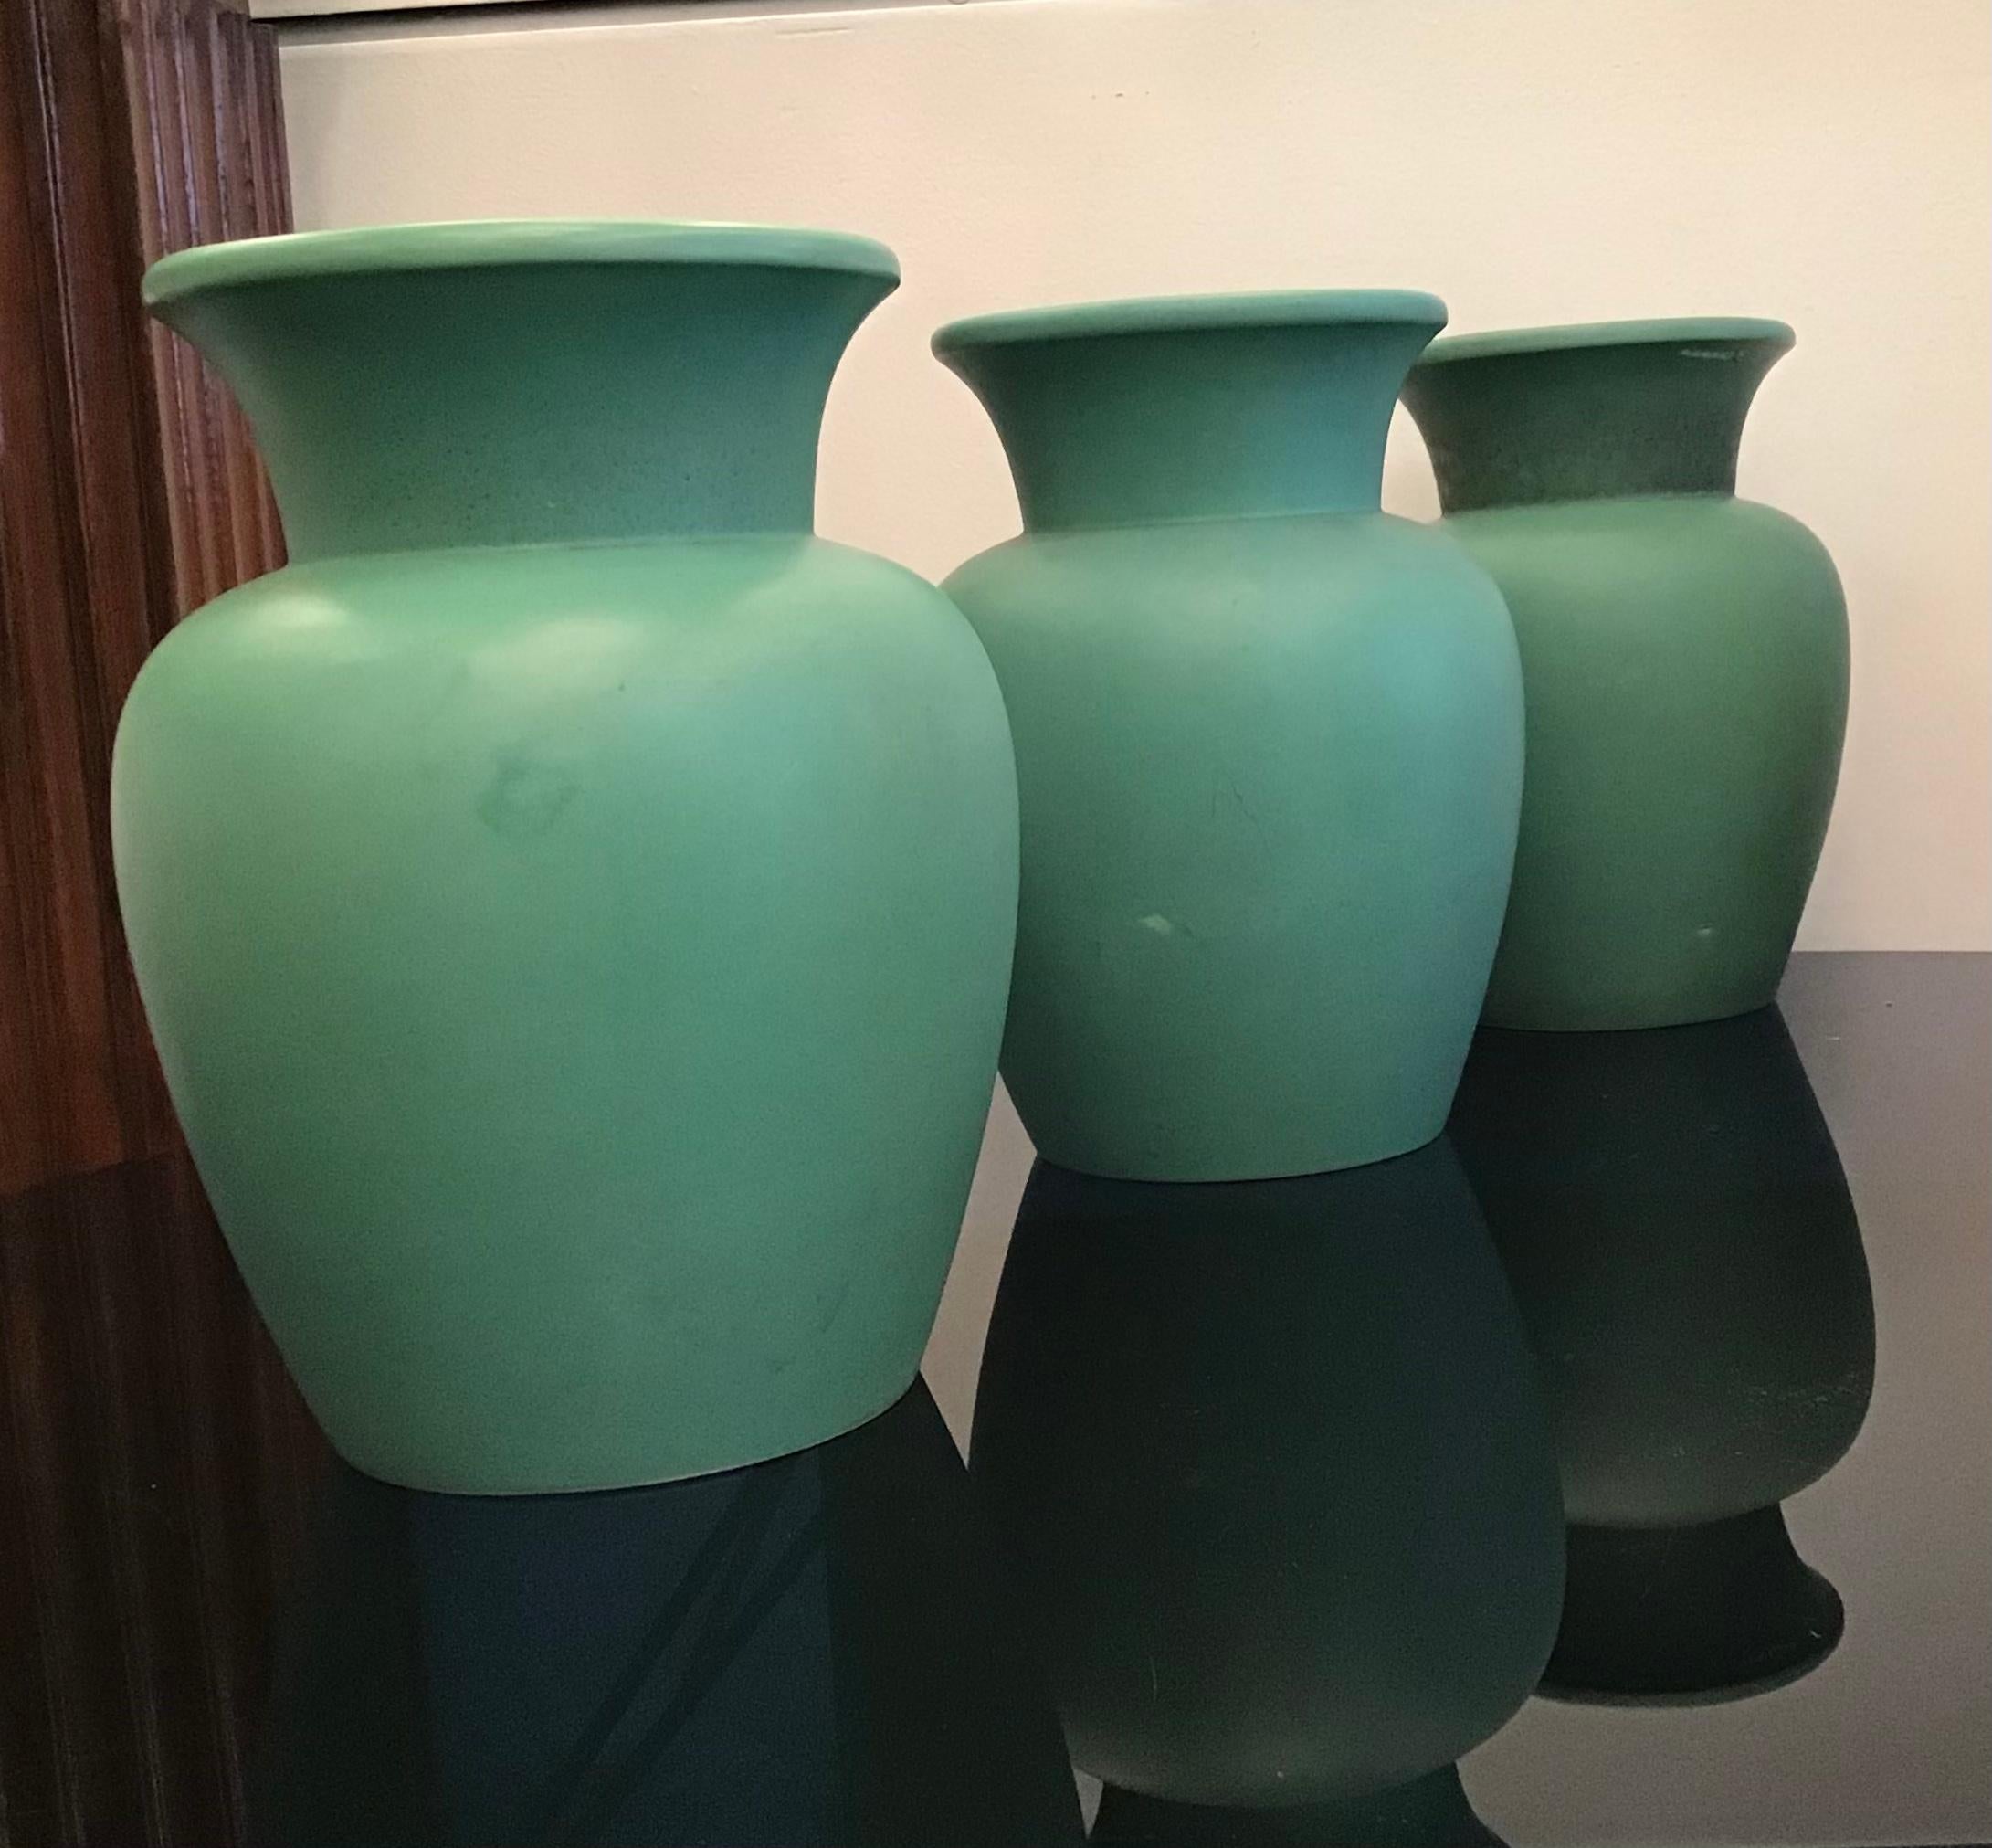 Richard Ginori Giovanni Gariboldi vase green ceramic, 1950, Italy.